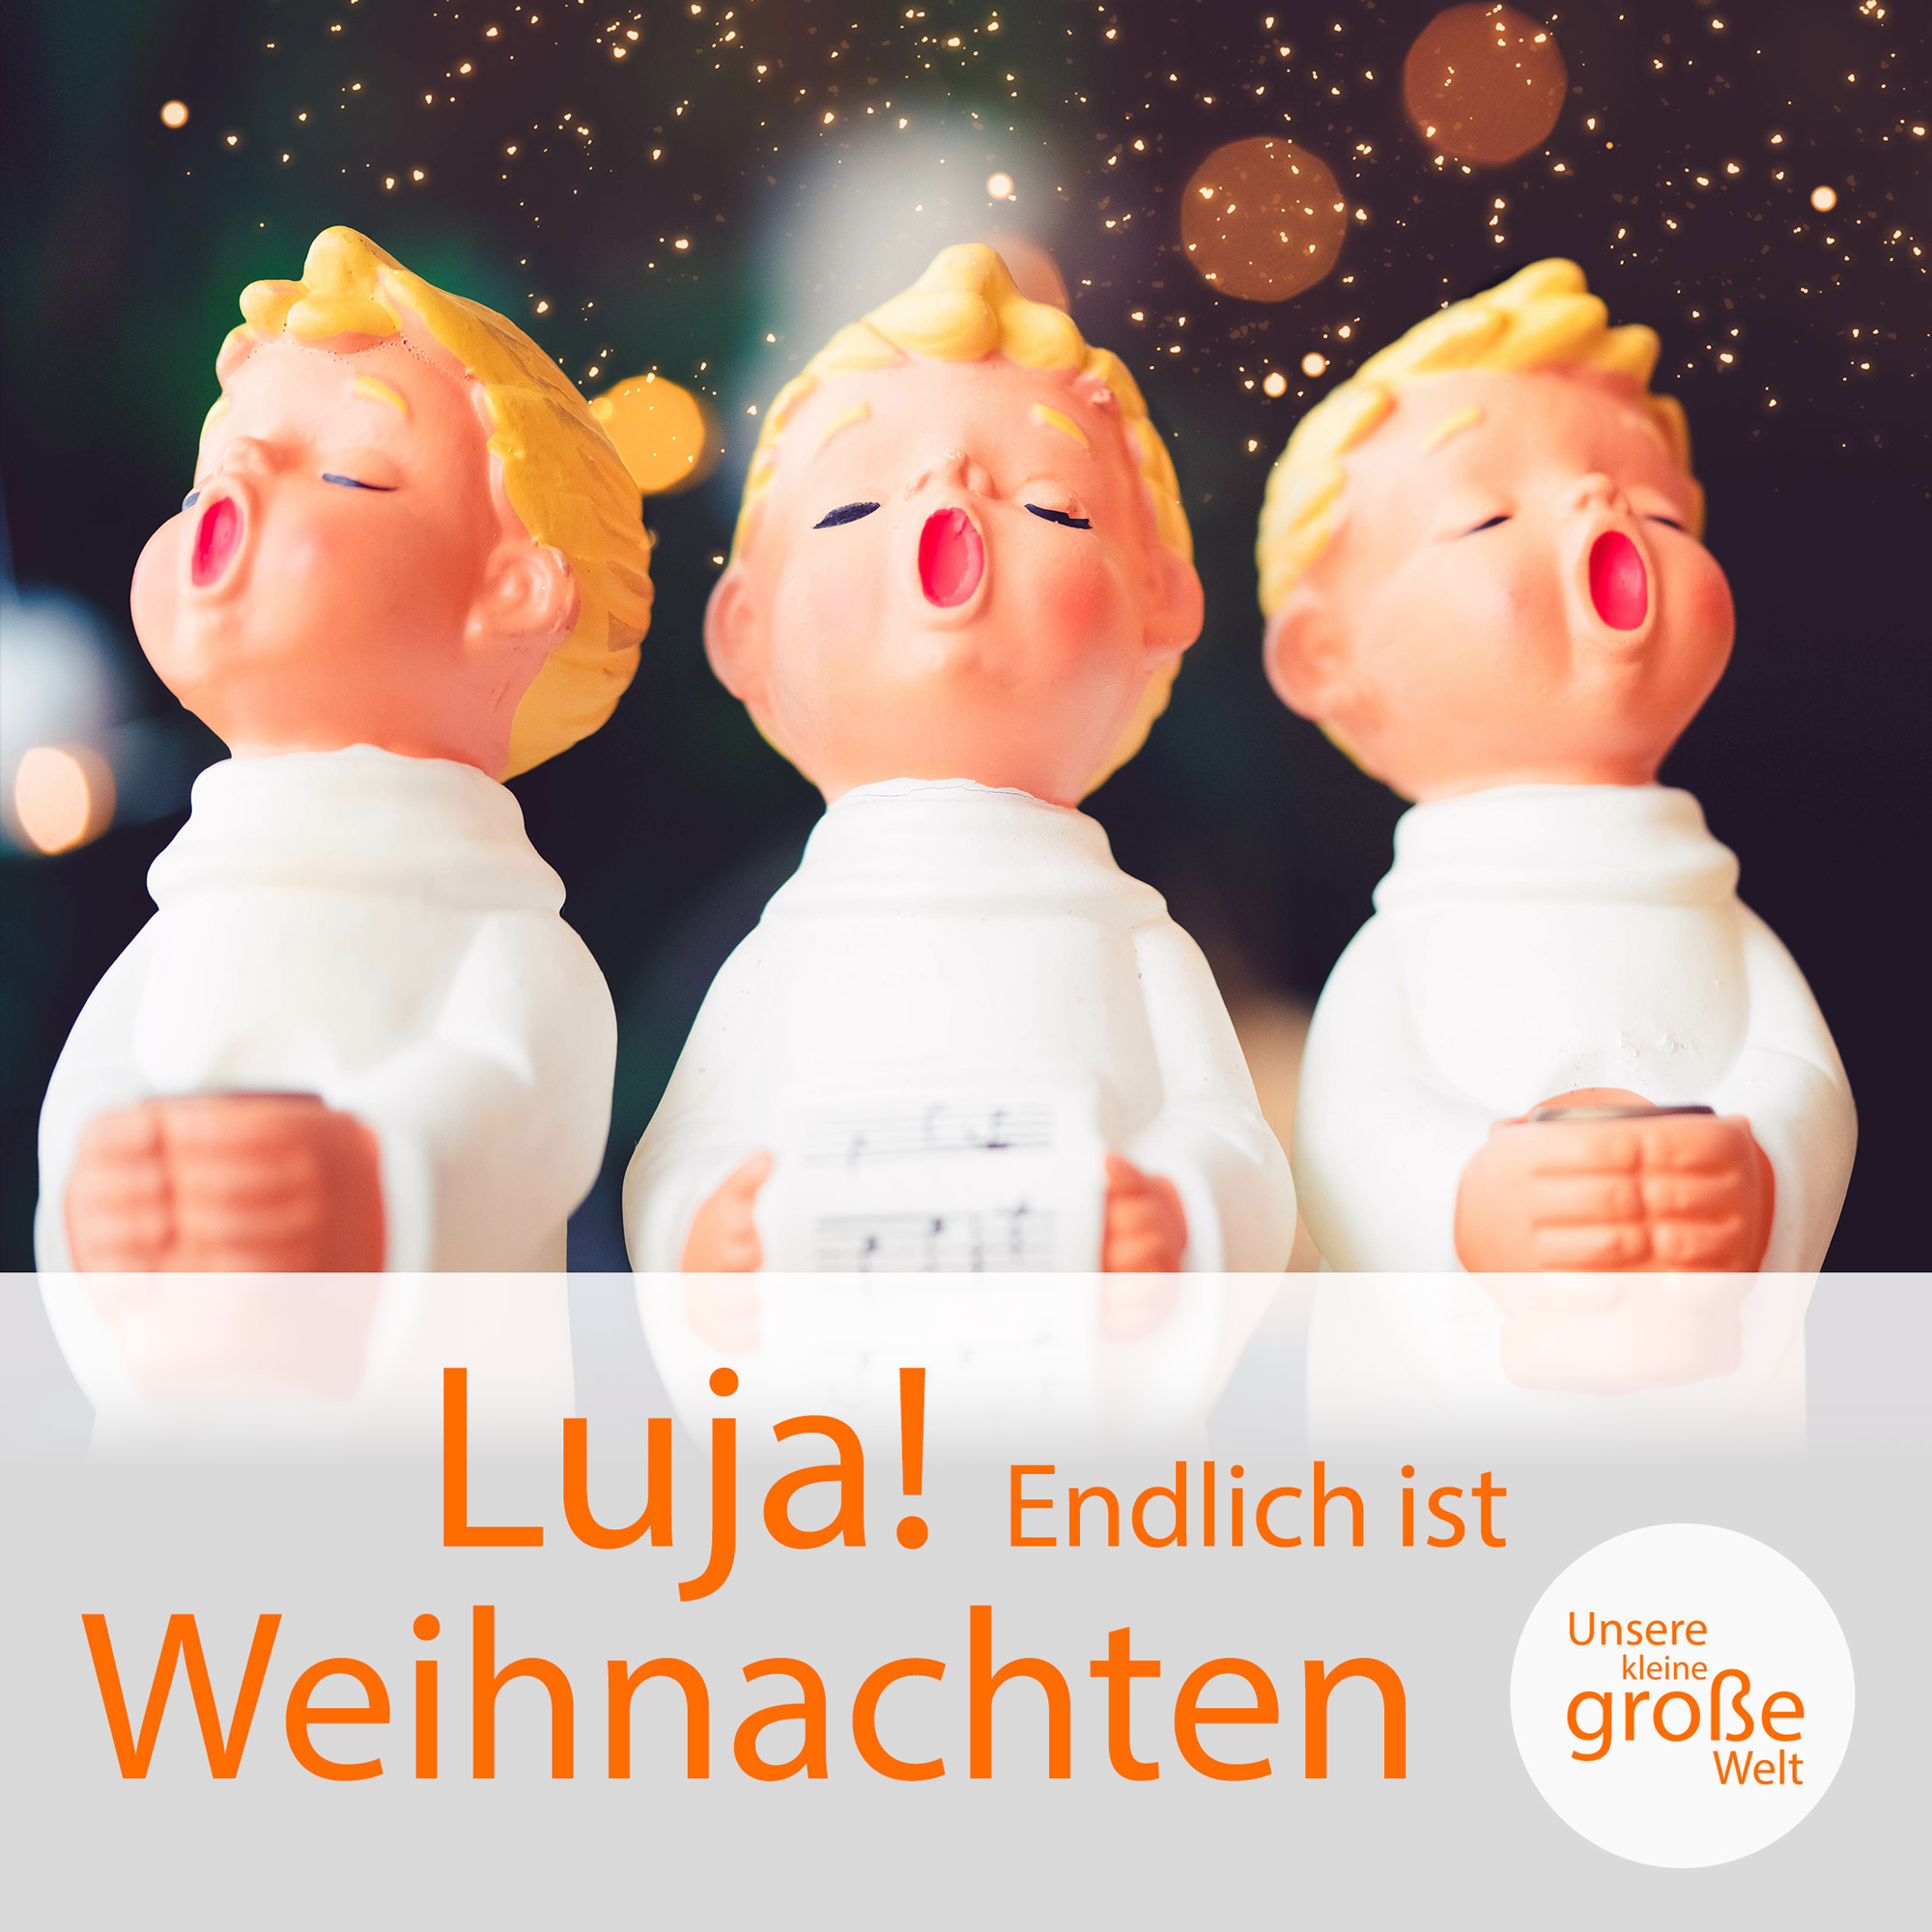 Unsere kleine, große Welt Folge 121: Luja! Endlich ist Weihnachten!